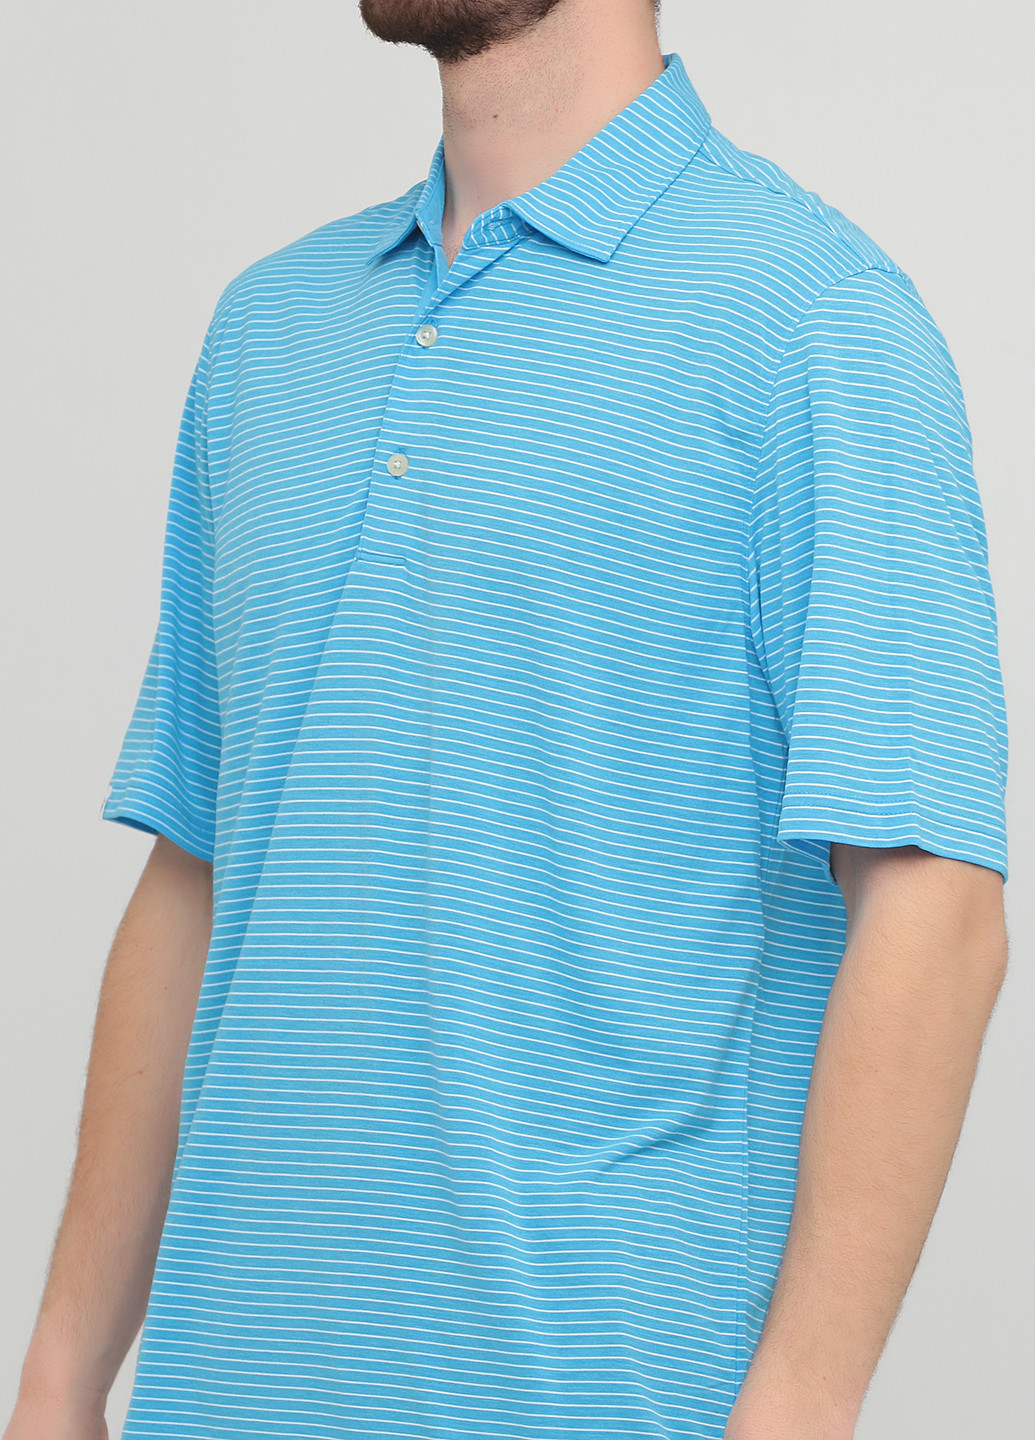 Голубой футболка-поло для мужчин Greg Norman в полоску